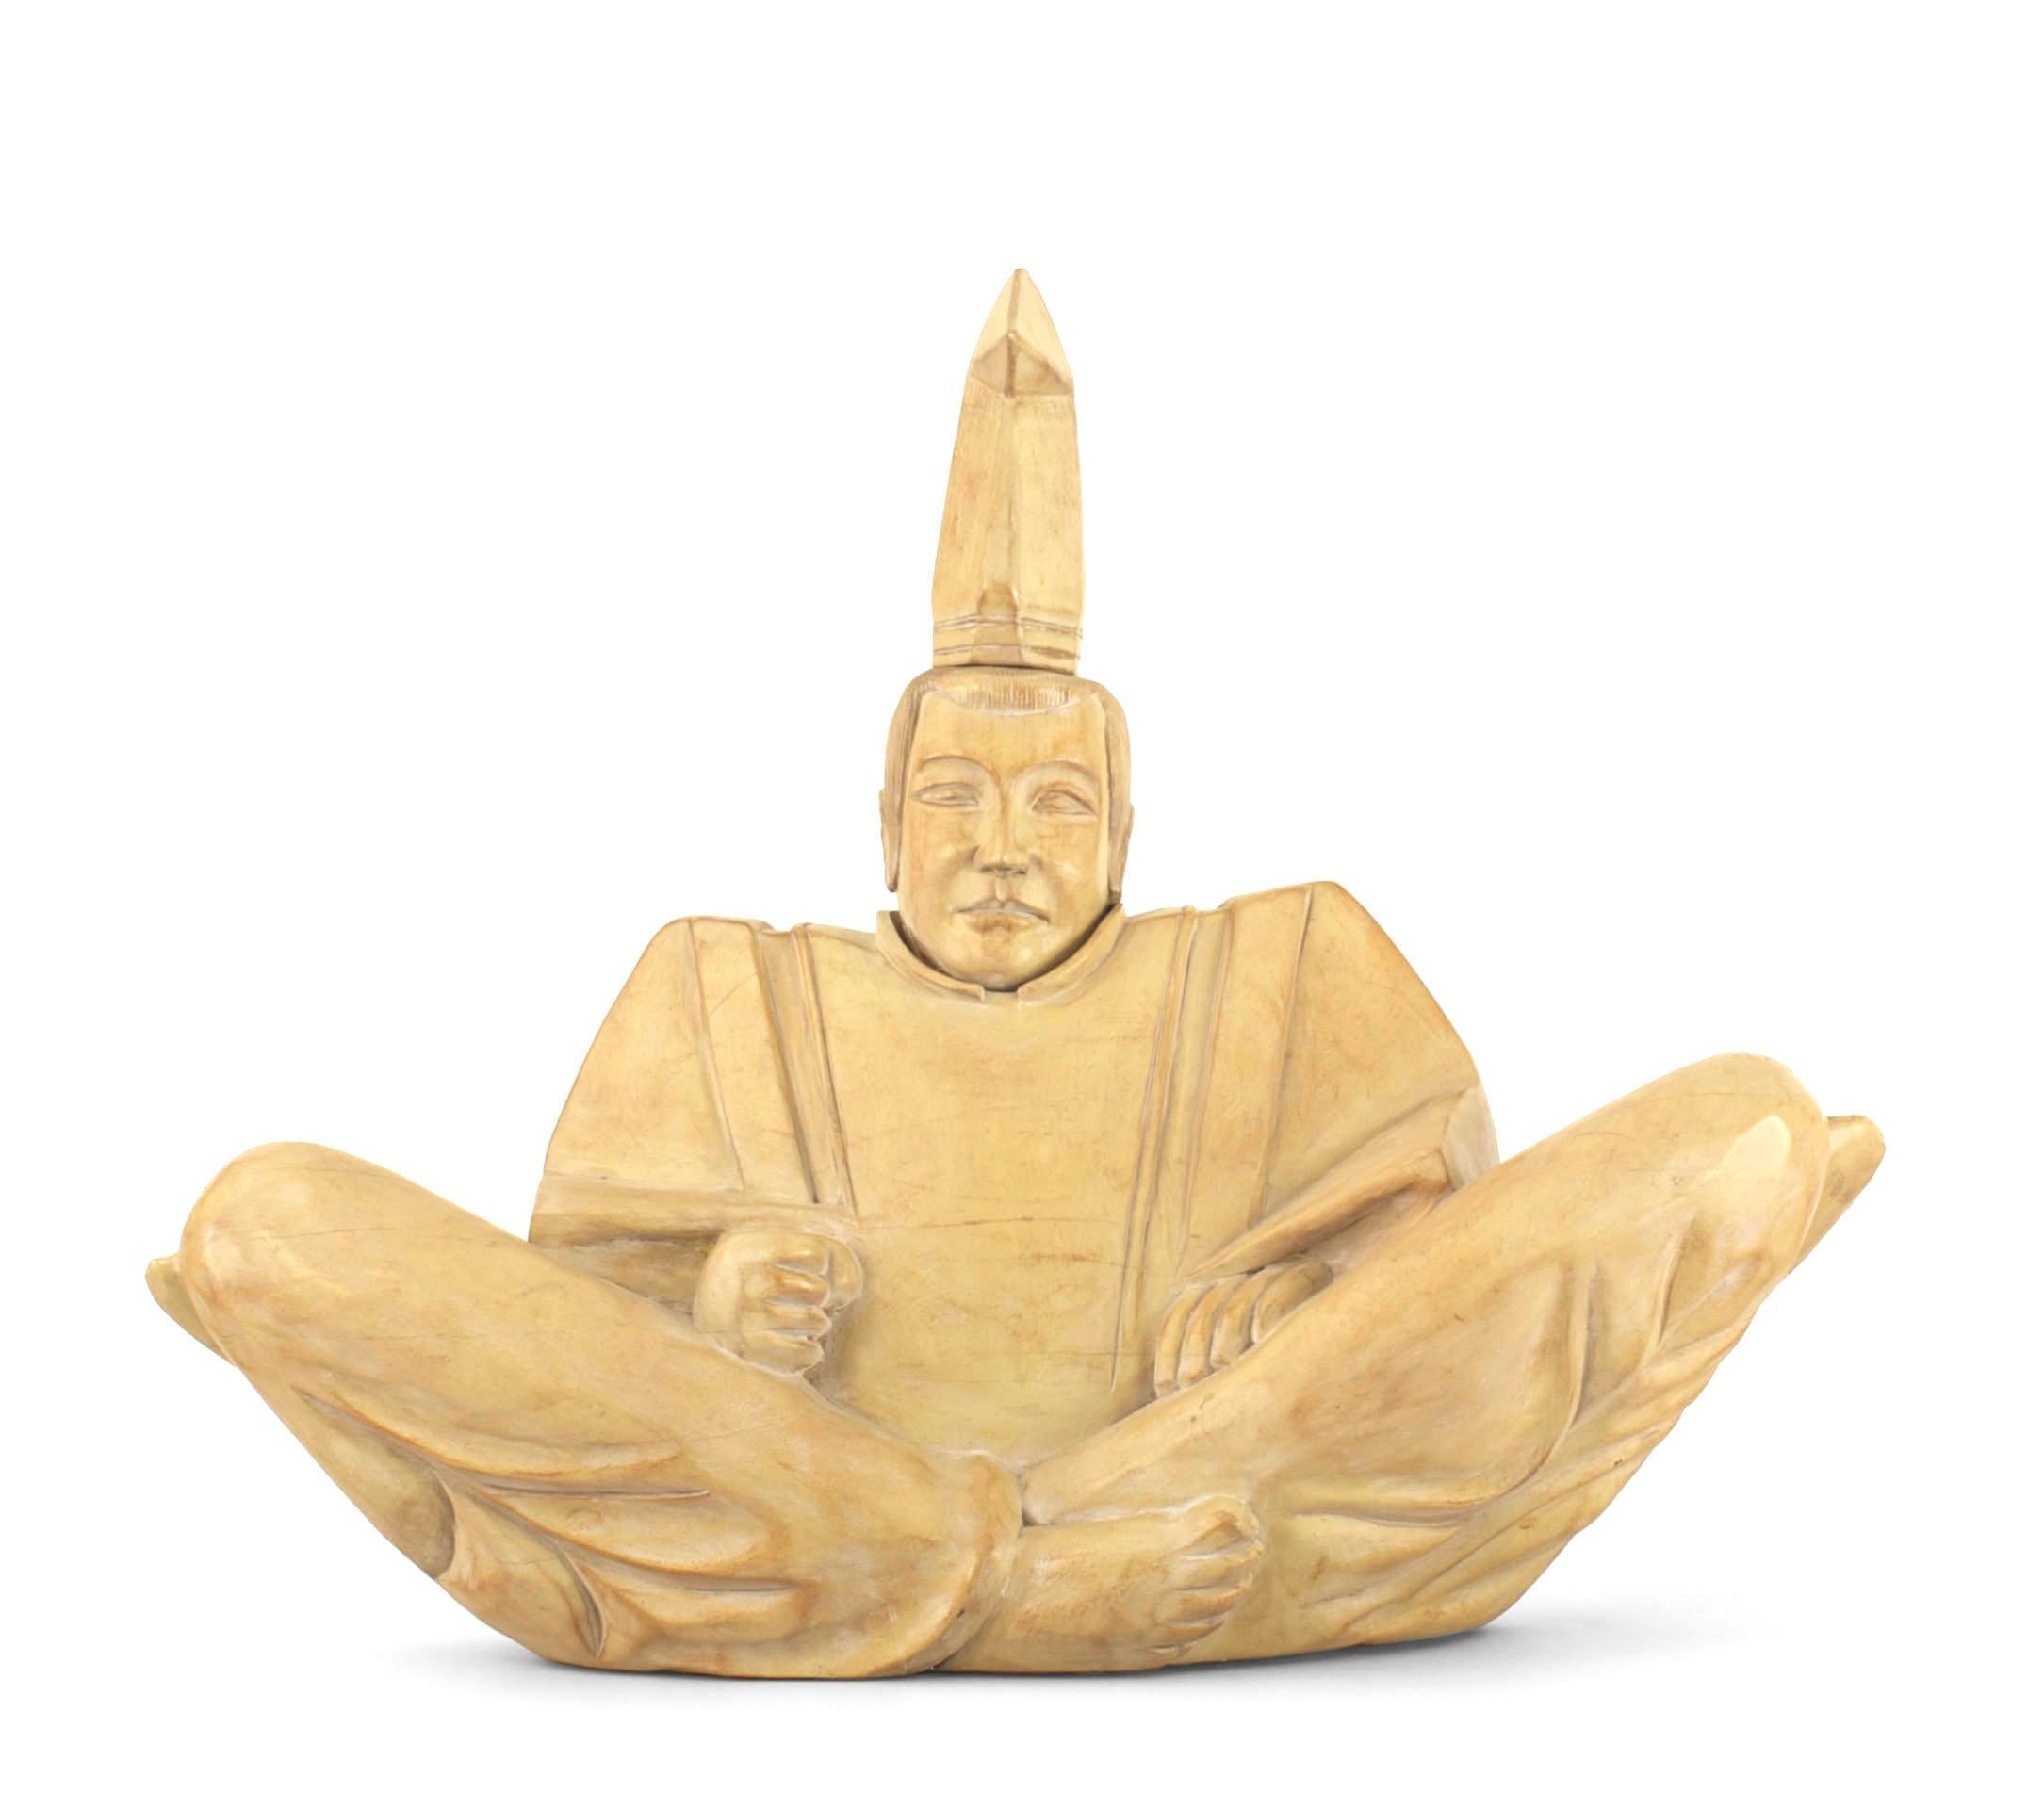 Figure religieuse sculptée en bois blanchi, de style asiatique japonais moderne du milieu du siècle, représentant un prêtre shinto assis en position du lotus, les jambes croisées.
